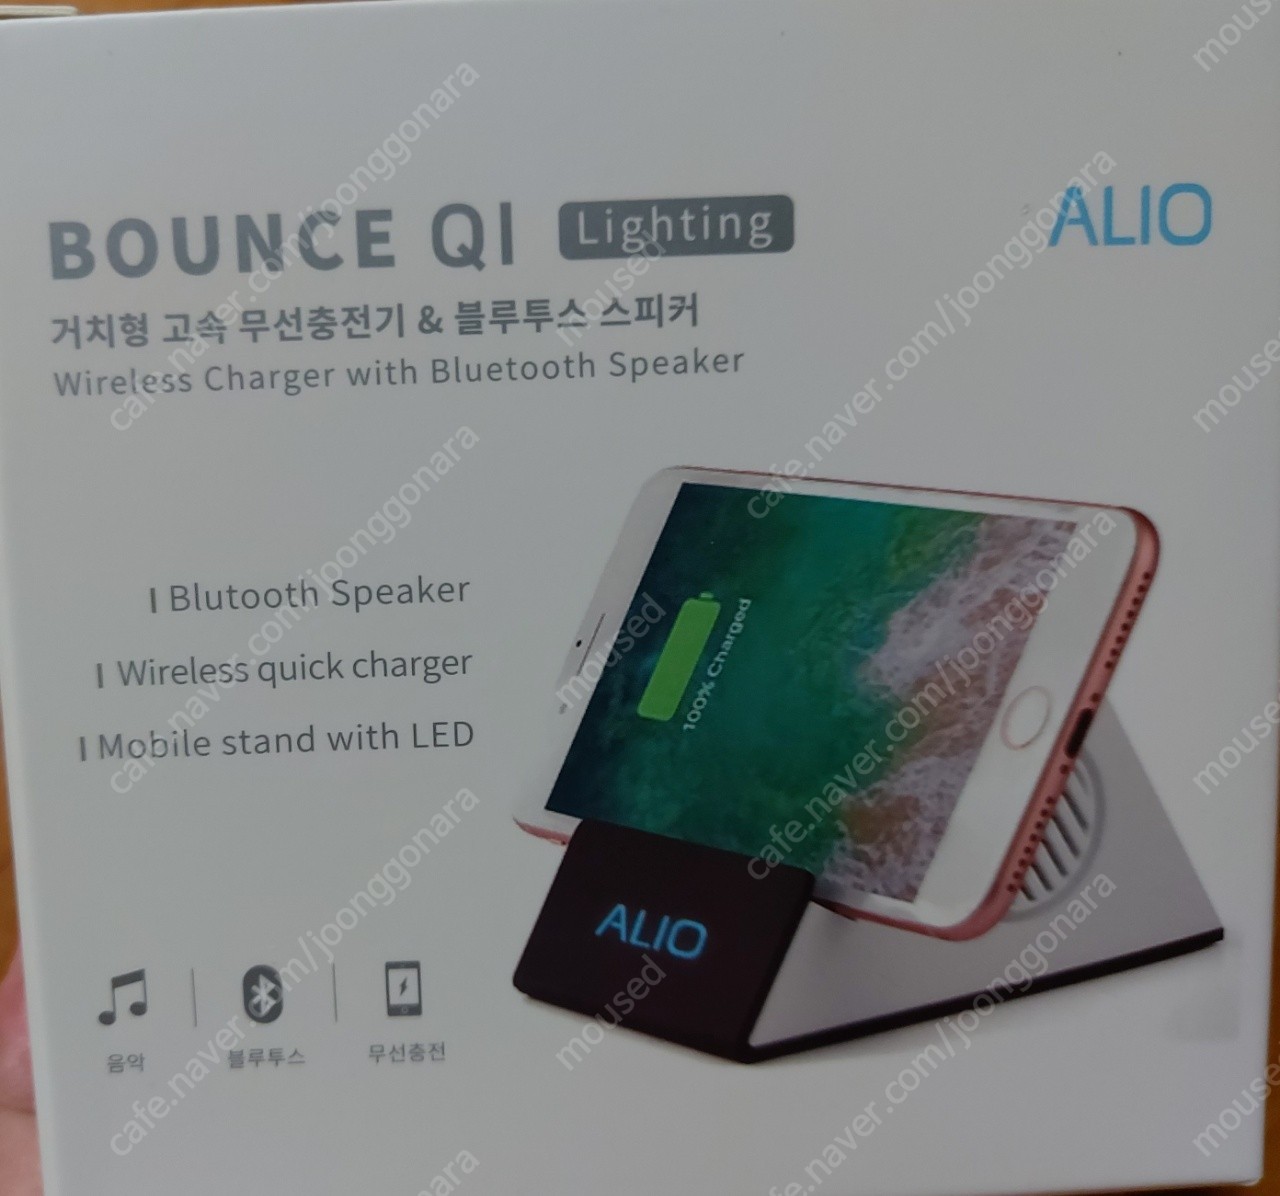 [미개봉] alio bounce QI 올인원 휴대폰 거치대(블루투스 스피커 & 무선 충전기 일체형)